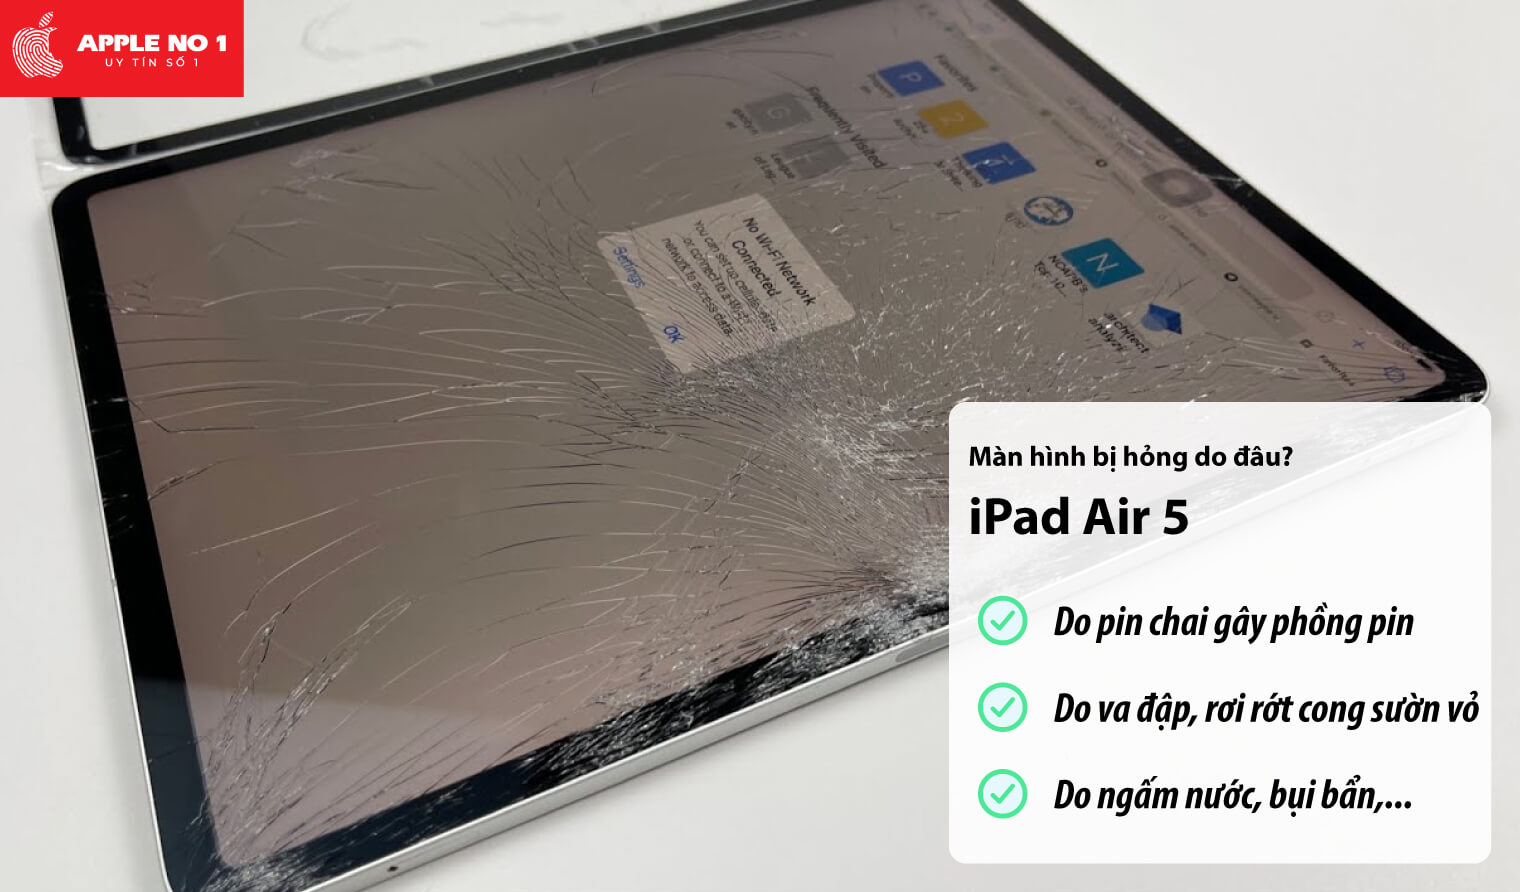 Màn hình iPad Air 5 bị hỏng do đâu?